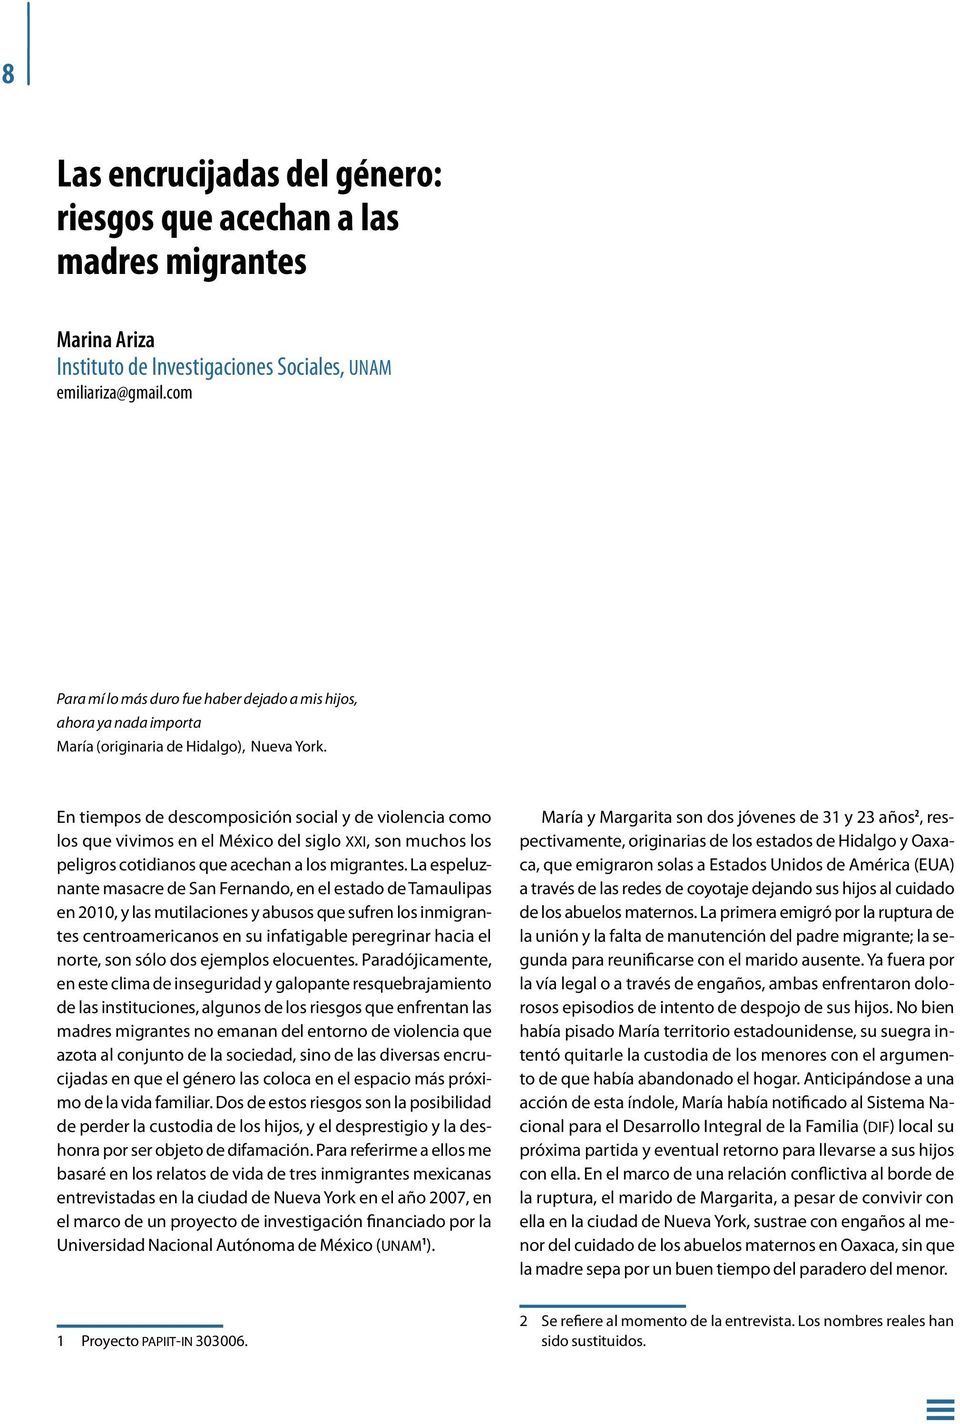 En tiempos de descomposición social y de violencia como los que vivimos en el México del siglo xxi, son muchos los peligros cotidianos que acechan a los migrantes.